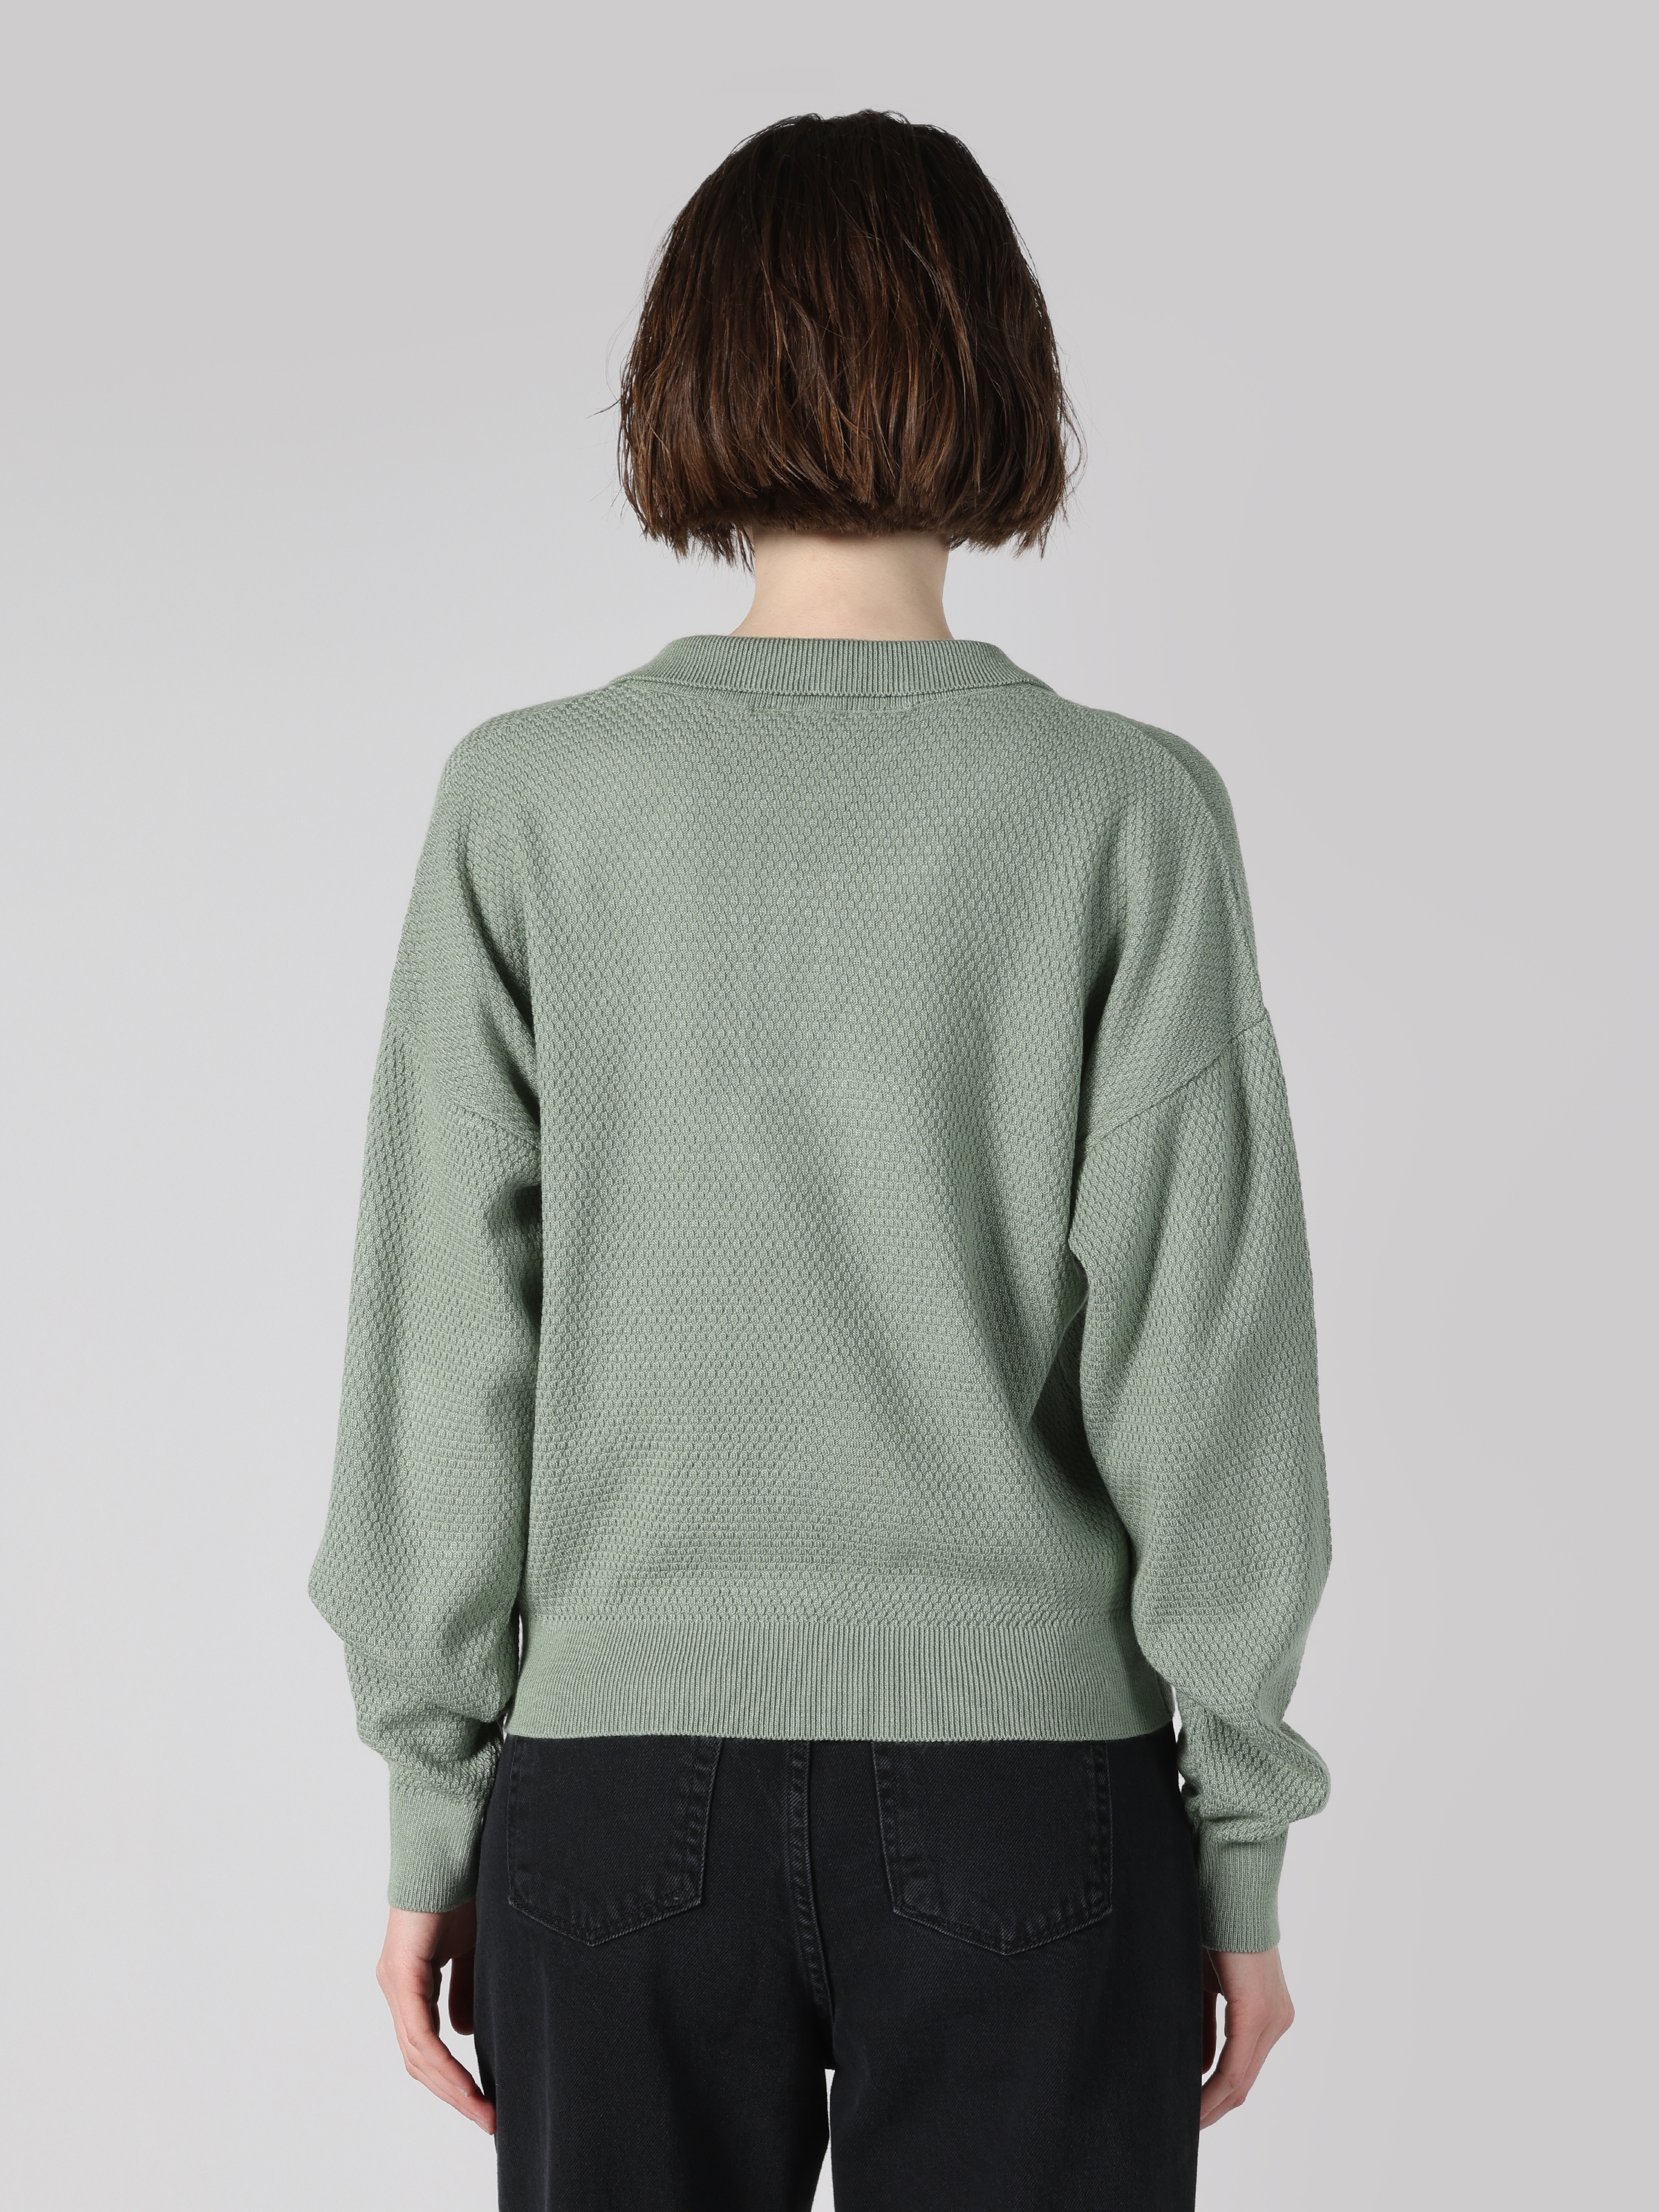 Afficher les détails de Sweatshirt Vert Femmes